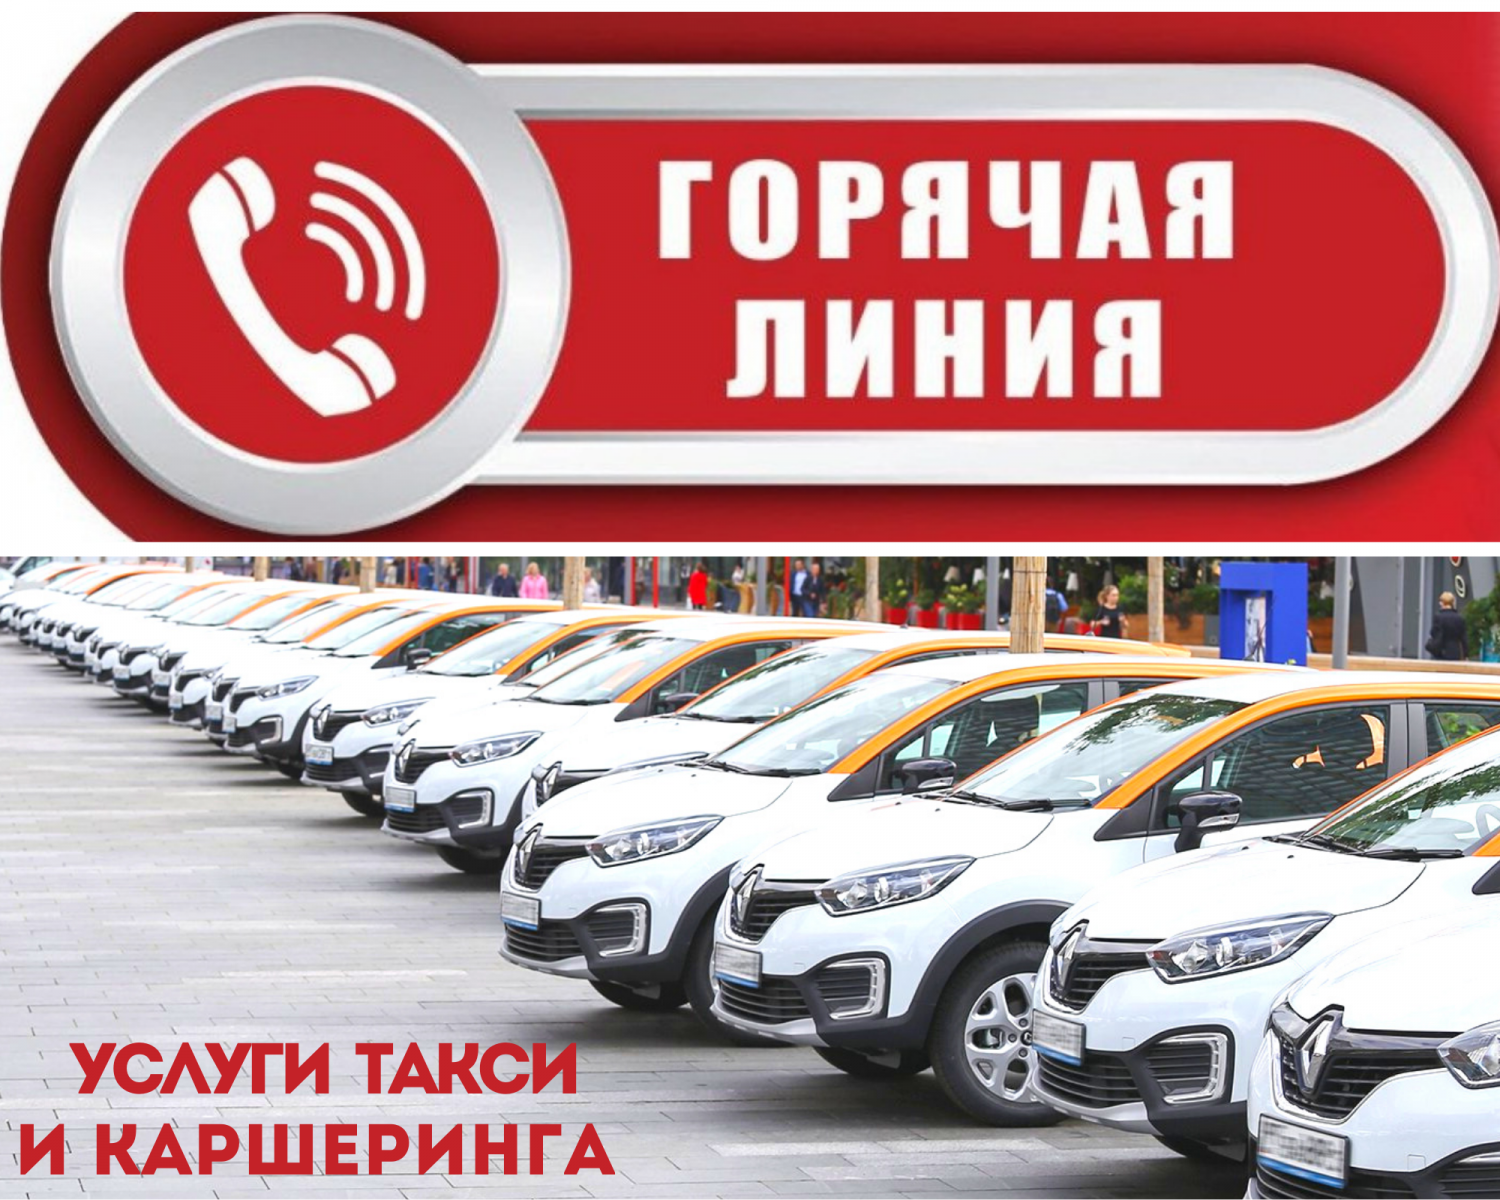 В Челябинской области, в период с 14 по 25 ноября будет работать телефонная «горячая линия» по услугам такси и каршеринга